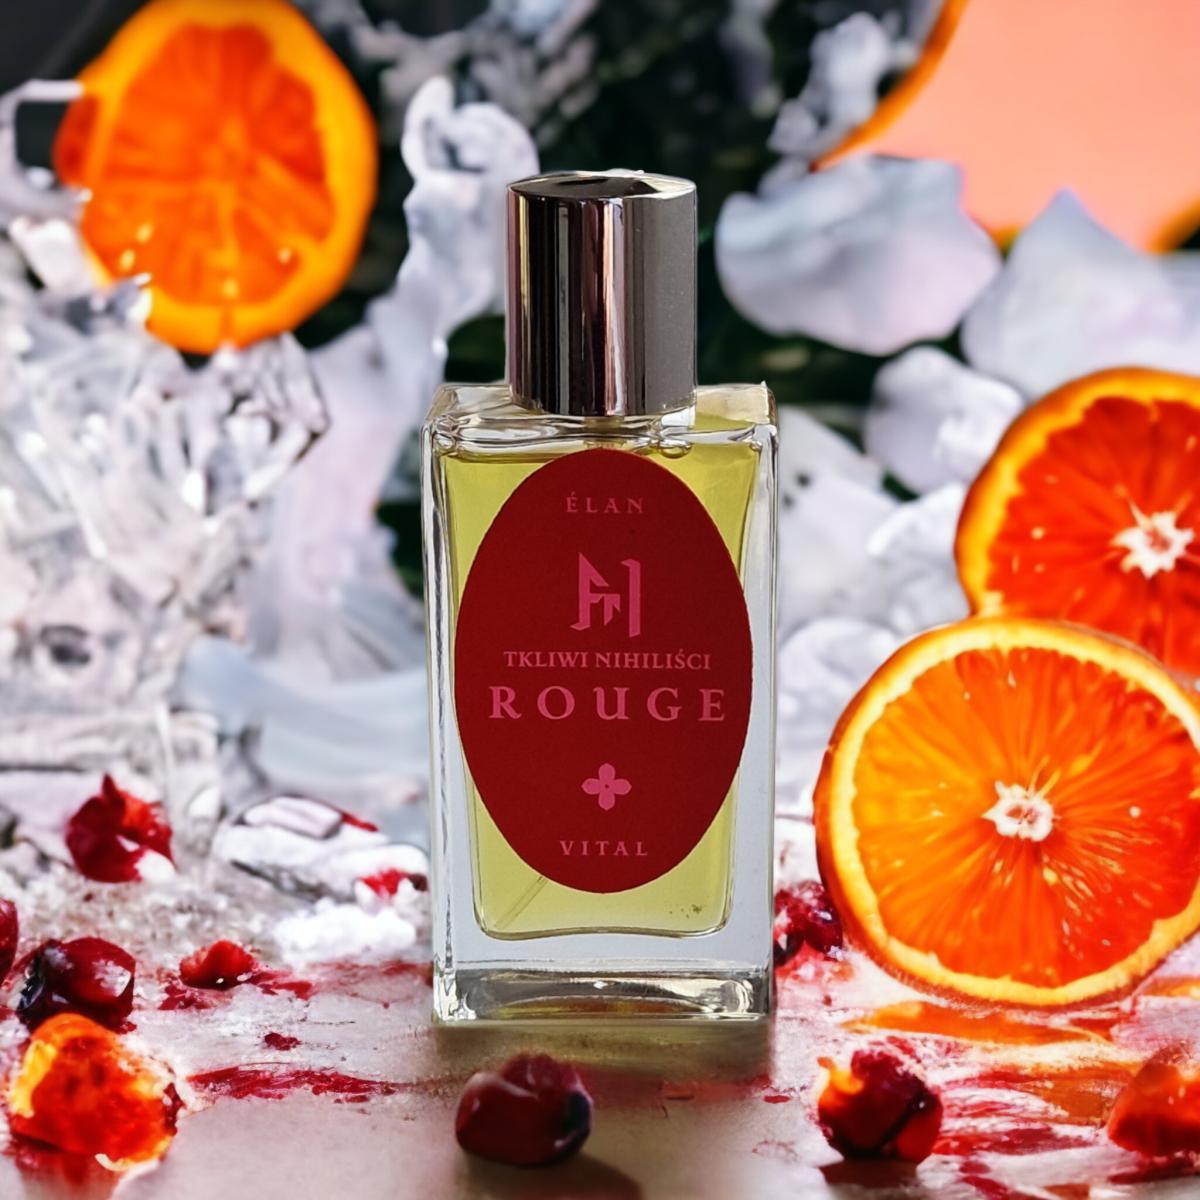 ᴇ́ʟᴀɴ ᴠɪᴛᴀʟ ʀᴏᴜɢᴇ Tkliwi Nihilisci perfume - a new fragrance for women ...